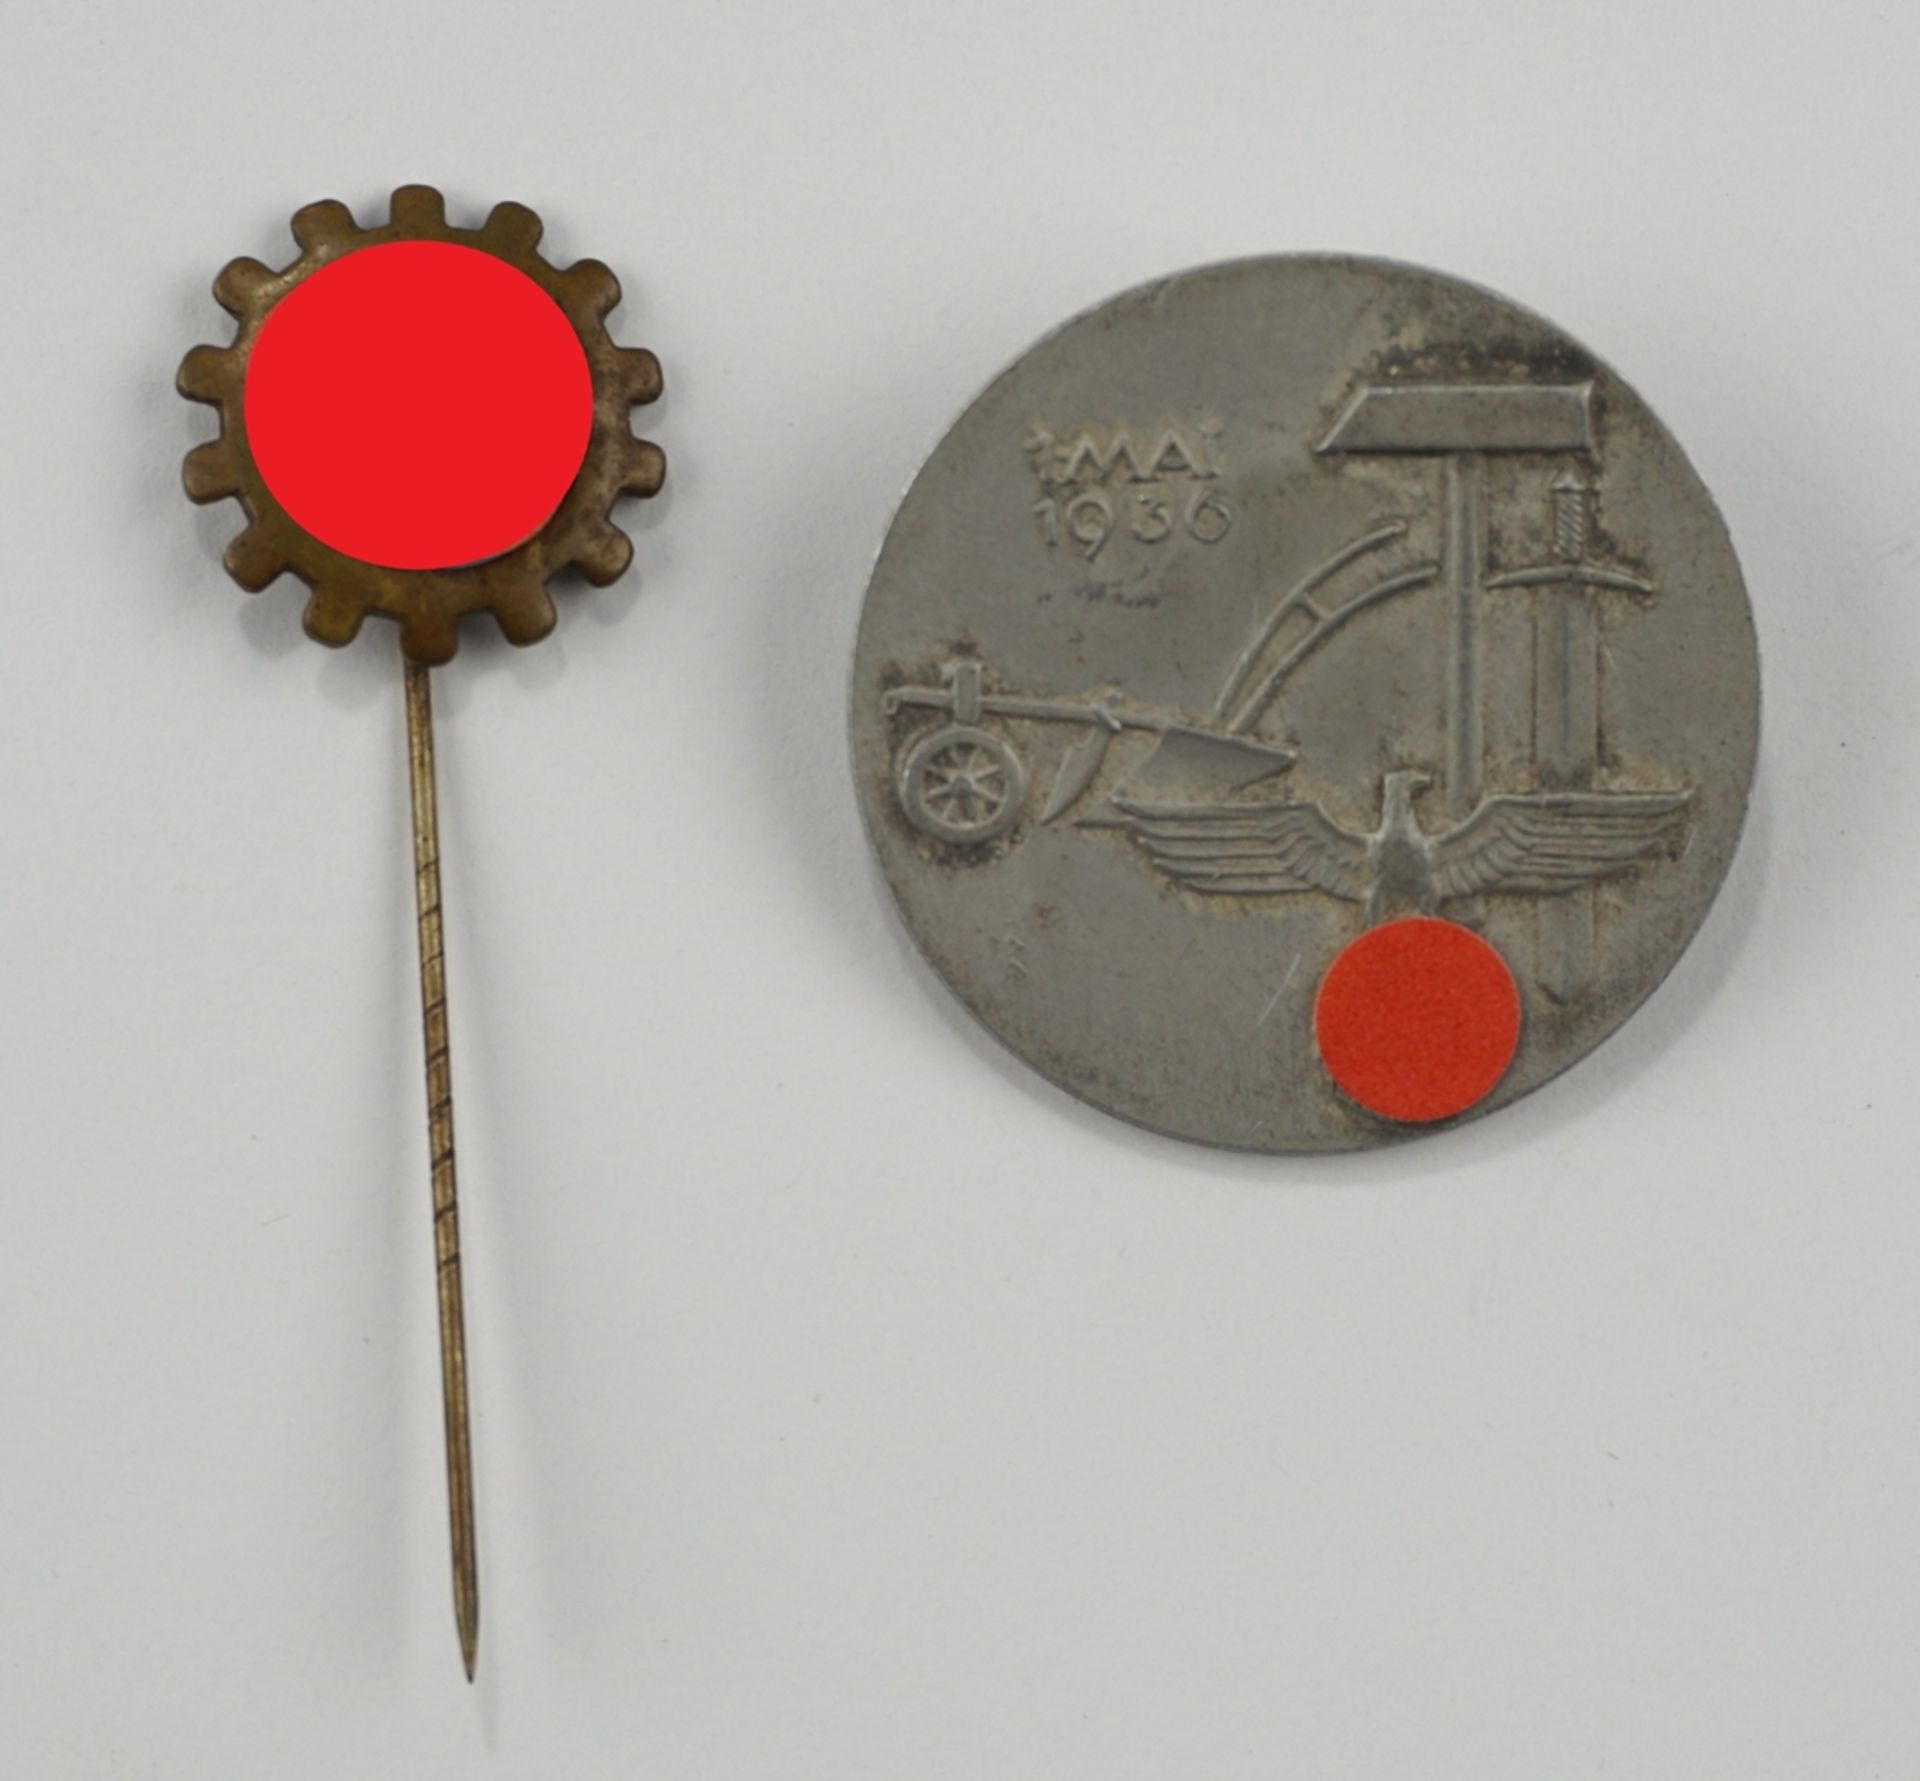 Mitgliedsabzeichen Deutsche Arbeistfront an Nadel und Leichtmetallabzeichen 1. Mai 1936, WK II